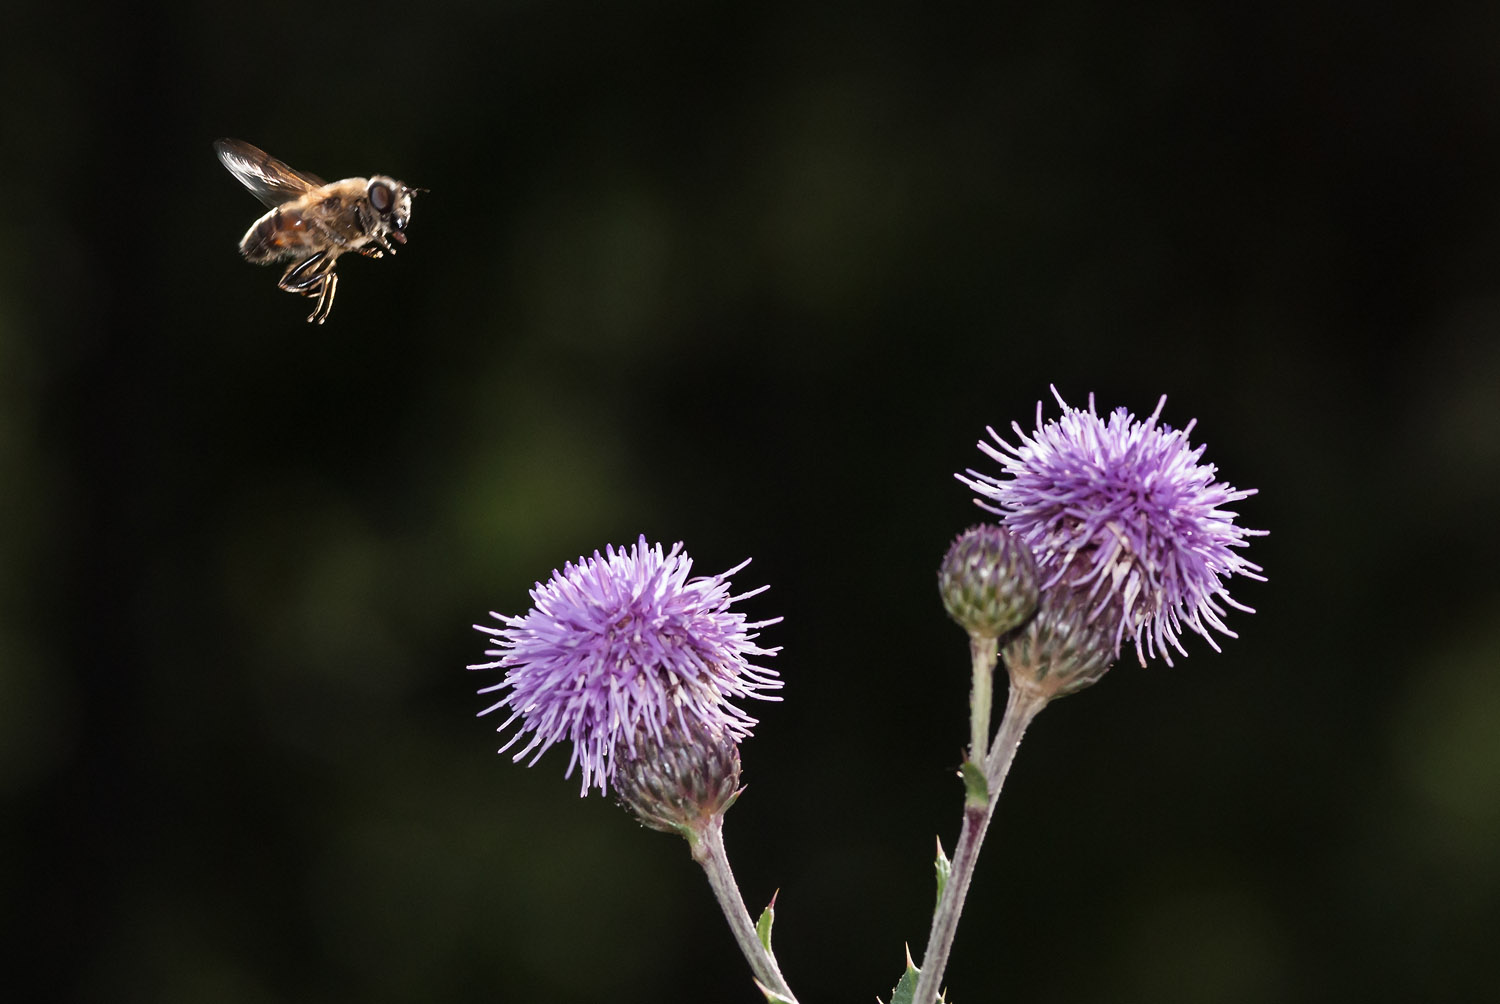 Honeybee in flight